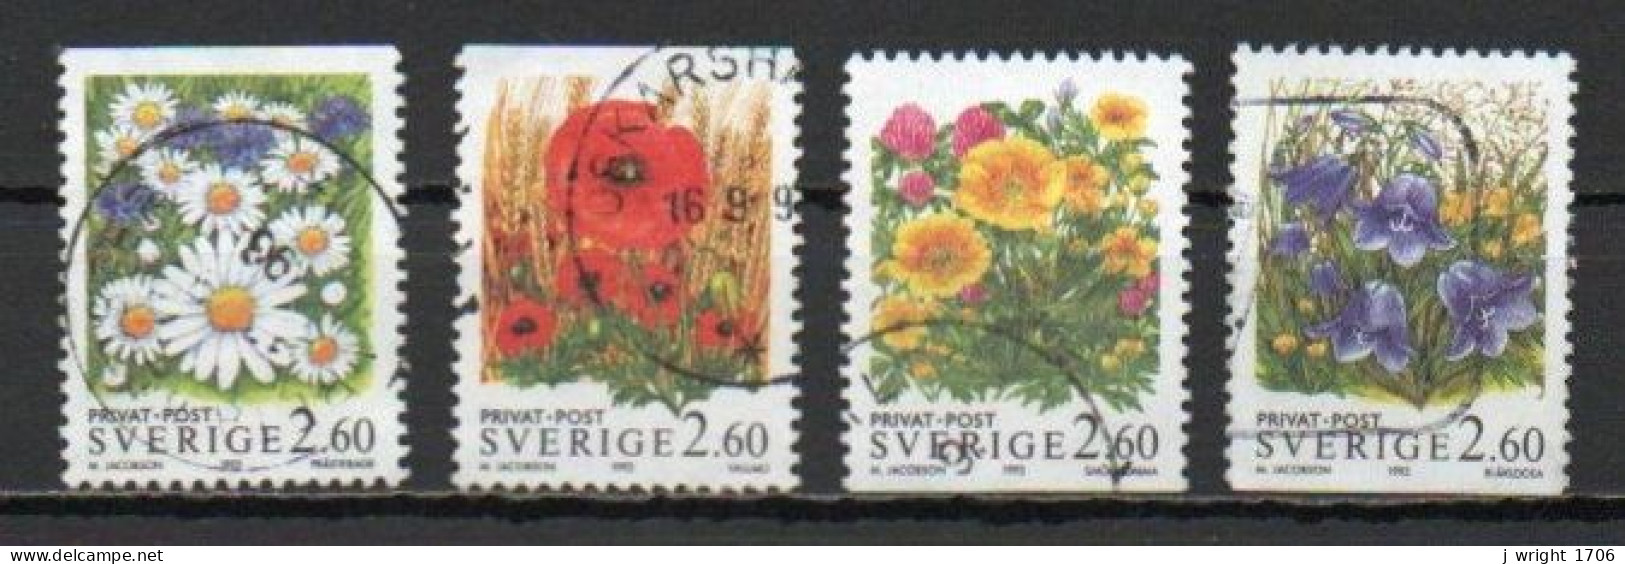 Sweden, 1993, Rebate Stamps/Flowers, Set, USED - Gebruikt